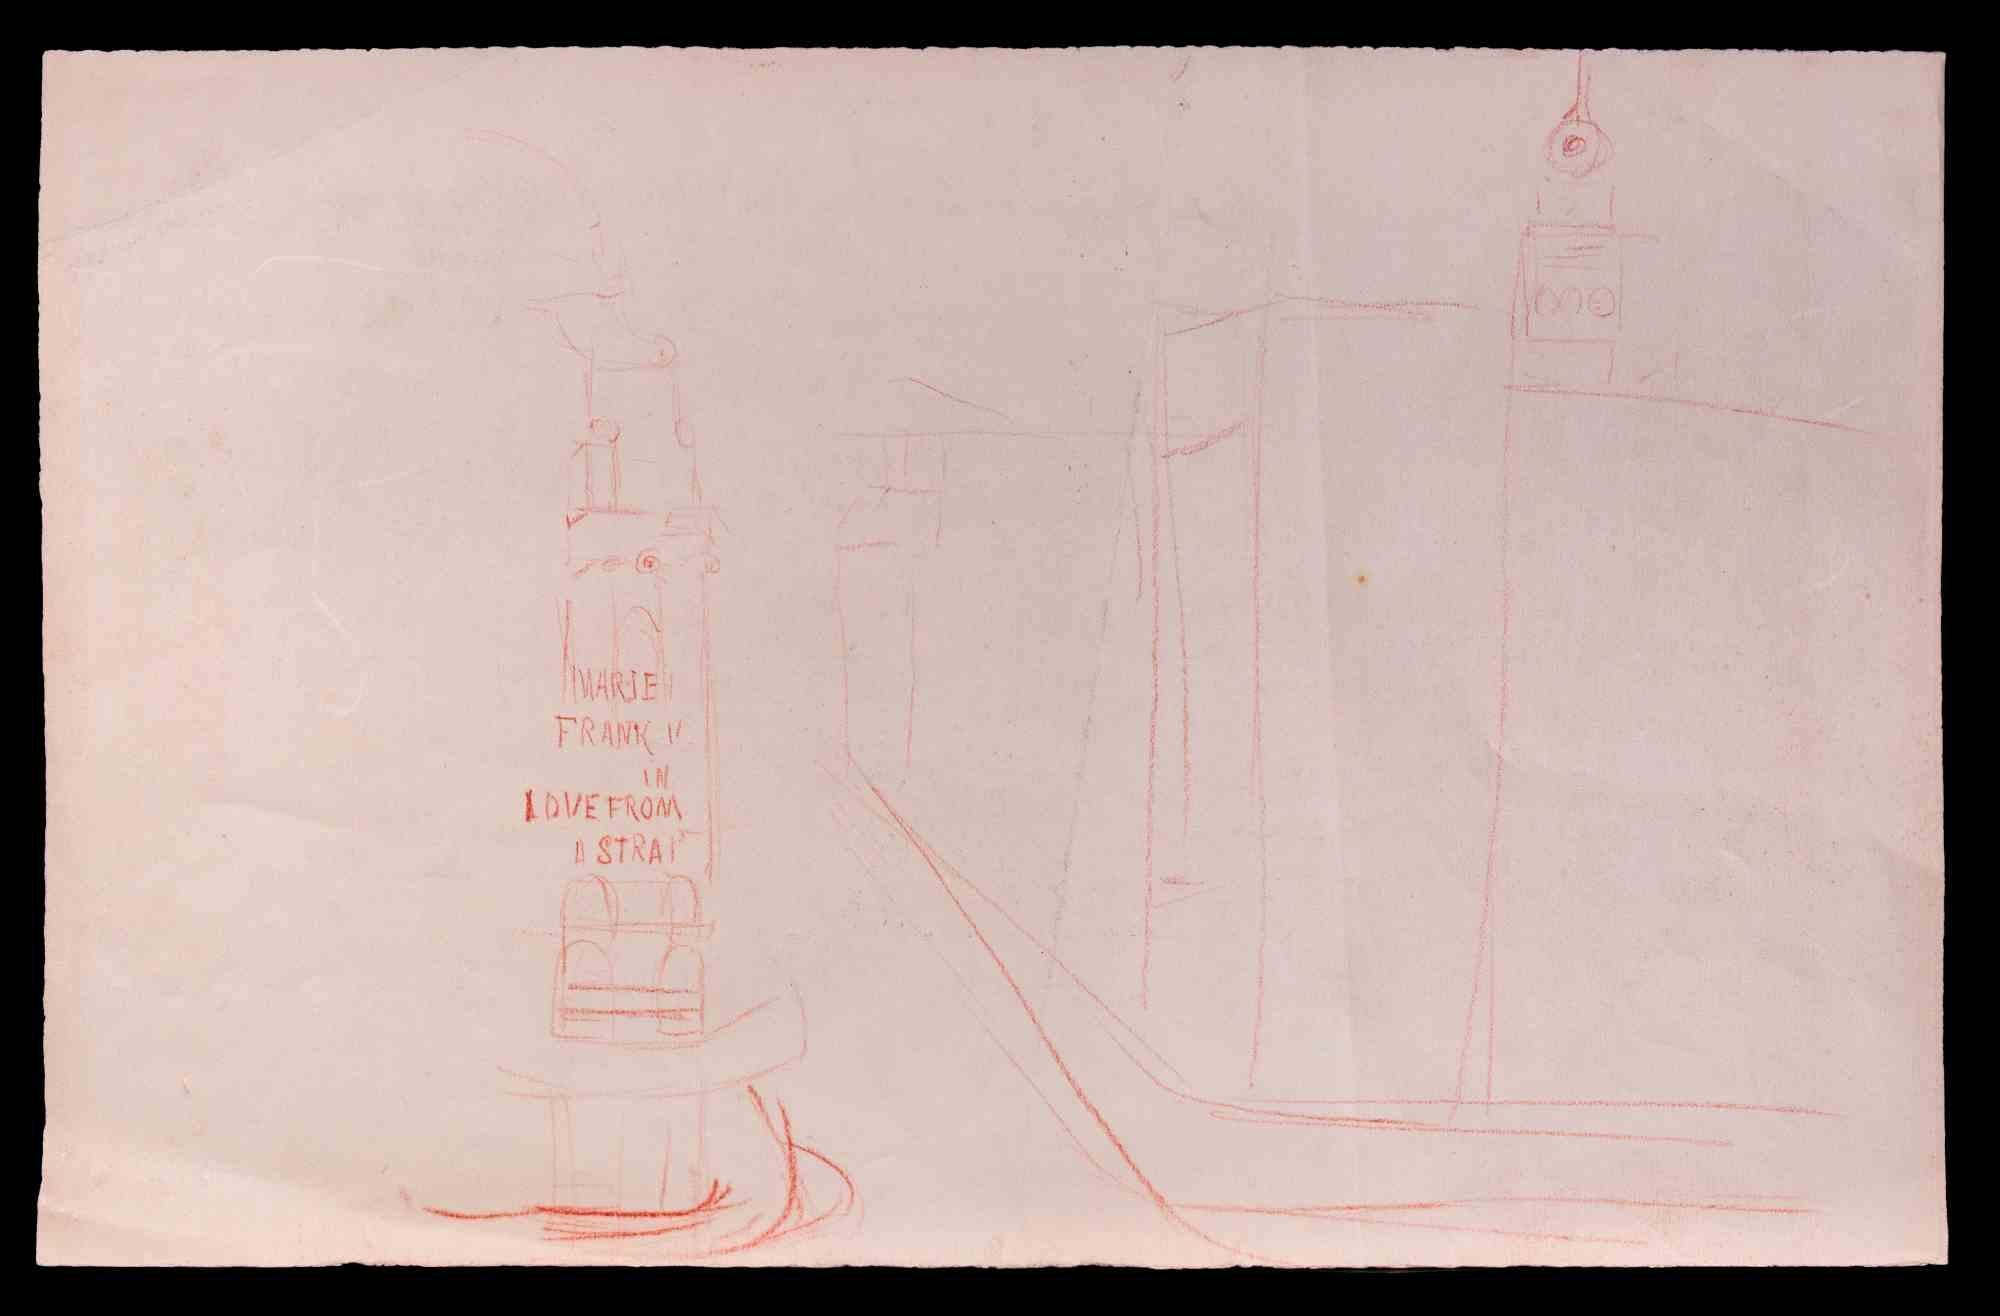 Marie Franke est un dessin original réalisé dans les premières décennies du 20ème siècle par l'artiste français  Gustave Bourgogne (Veignè, 1888 - Paris, 1968).
Crayon original sur papier. 
Bonnes conditions

Gustave Bourgogne   (Veignè, 1888 -